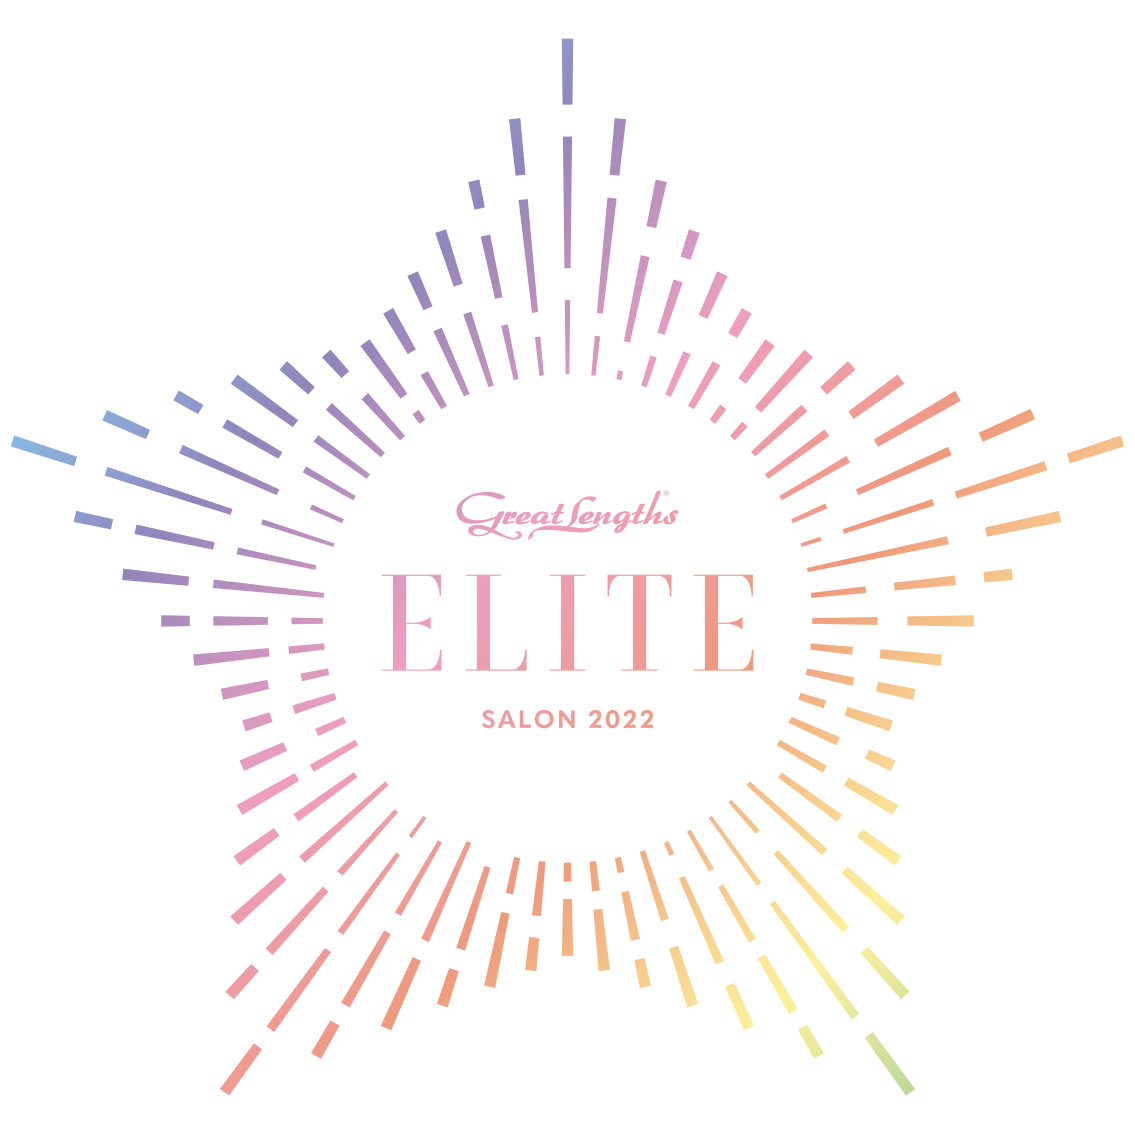 Elite Salon